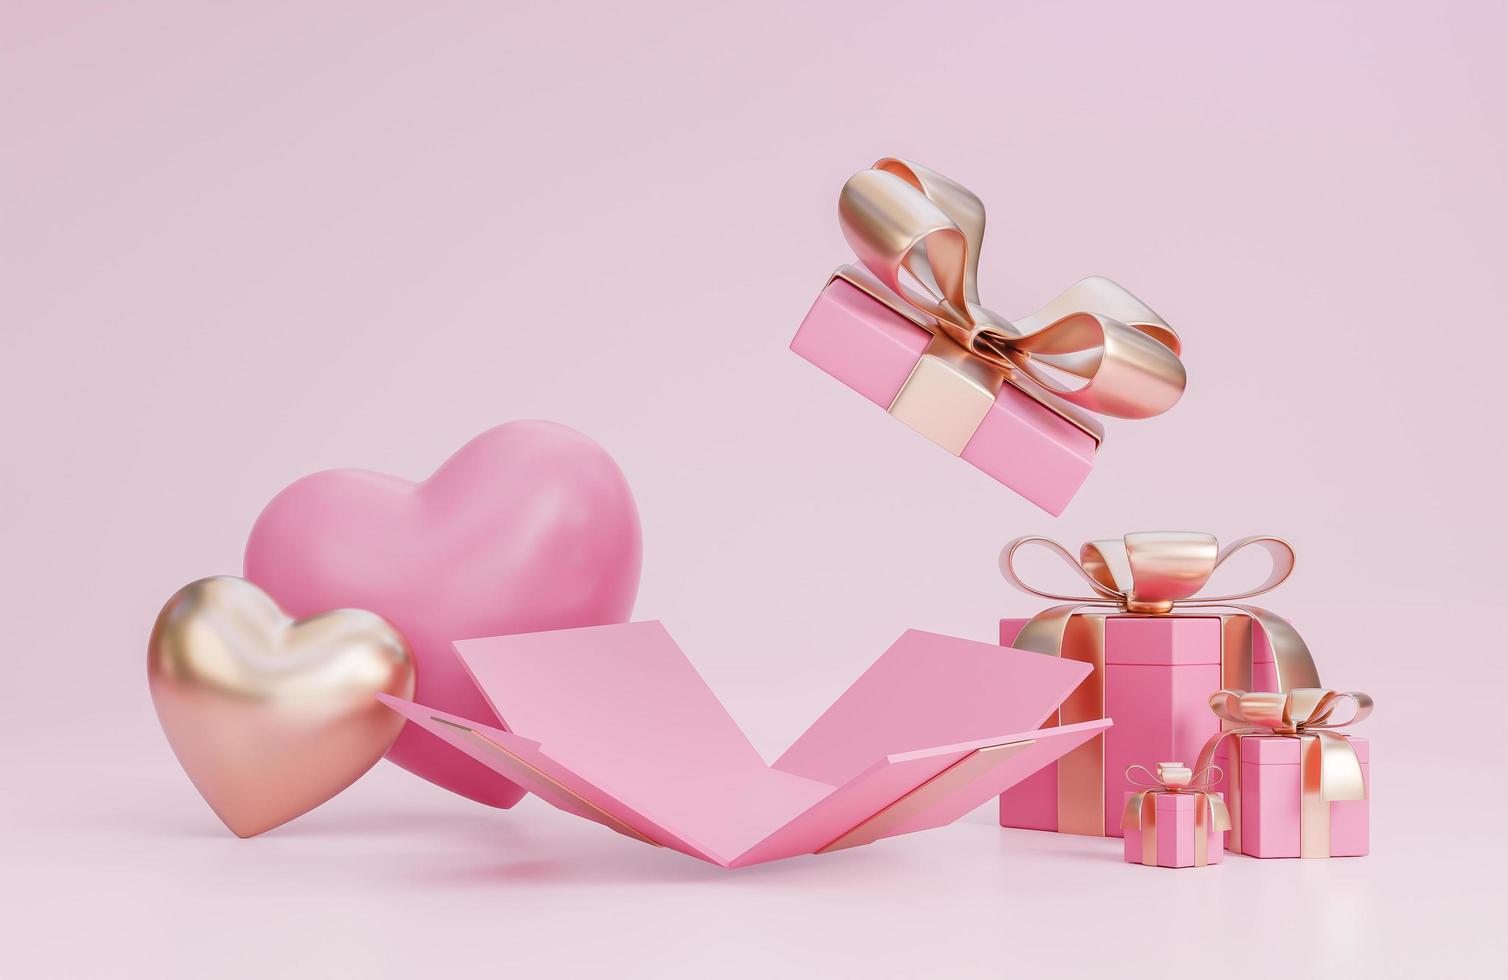 glad alla hjärtans dag banner med öppen presentförpackning, 3d hjärtan och romantiska alla hjärtans dekorationer på rosa bakgrund., 3D-modell och illustration. foto